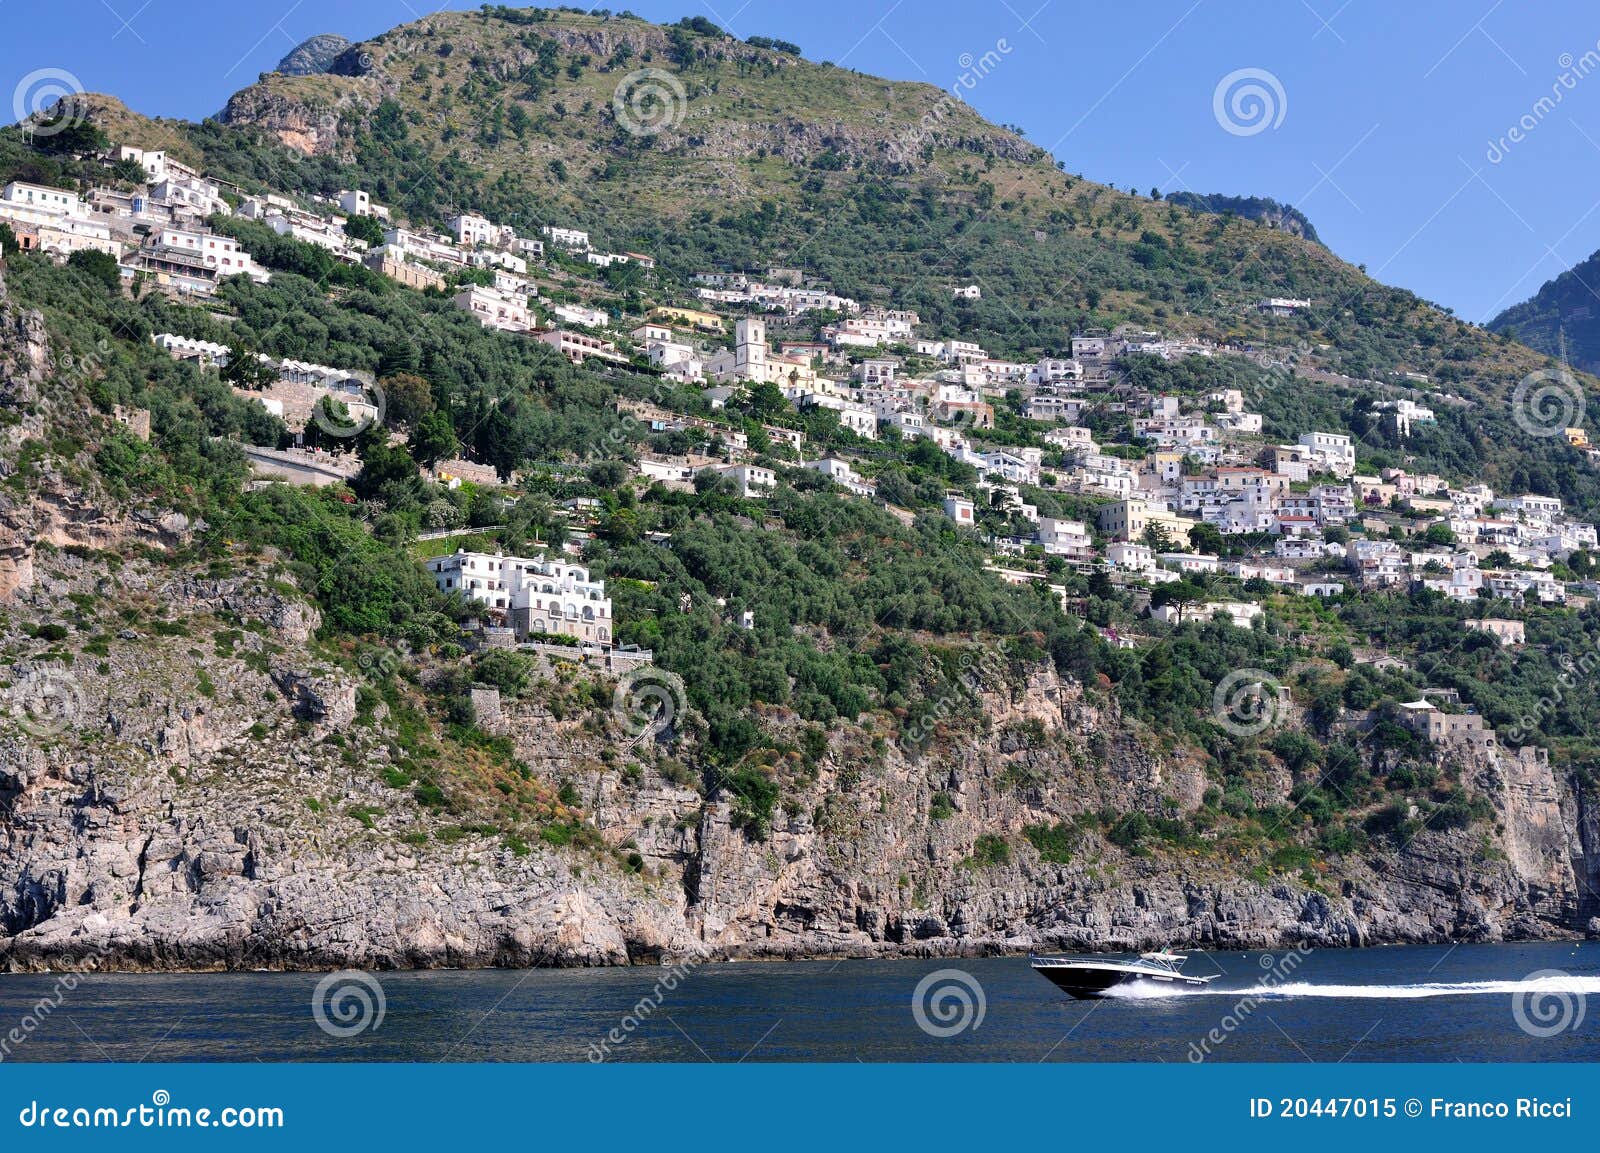 the coast of amalfi, costiera amalfitana, italia